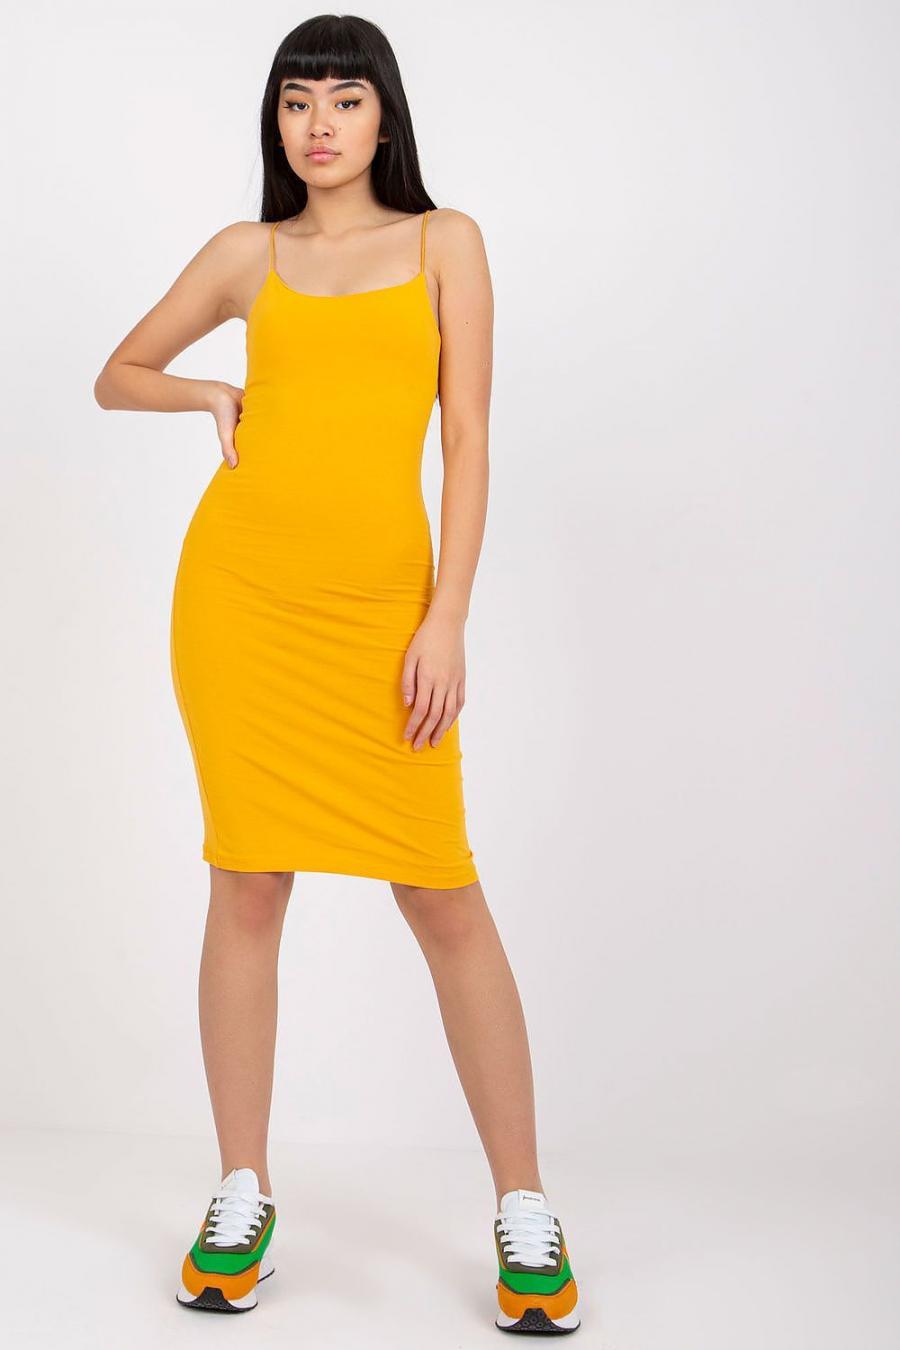 Ostatní značky šaty dámské 165147 - žlutá - velikost XS